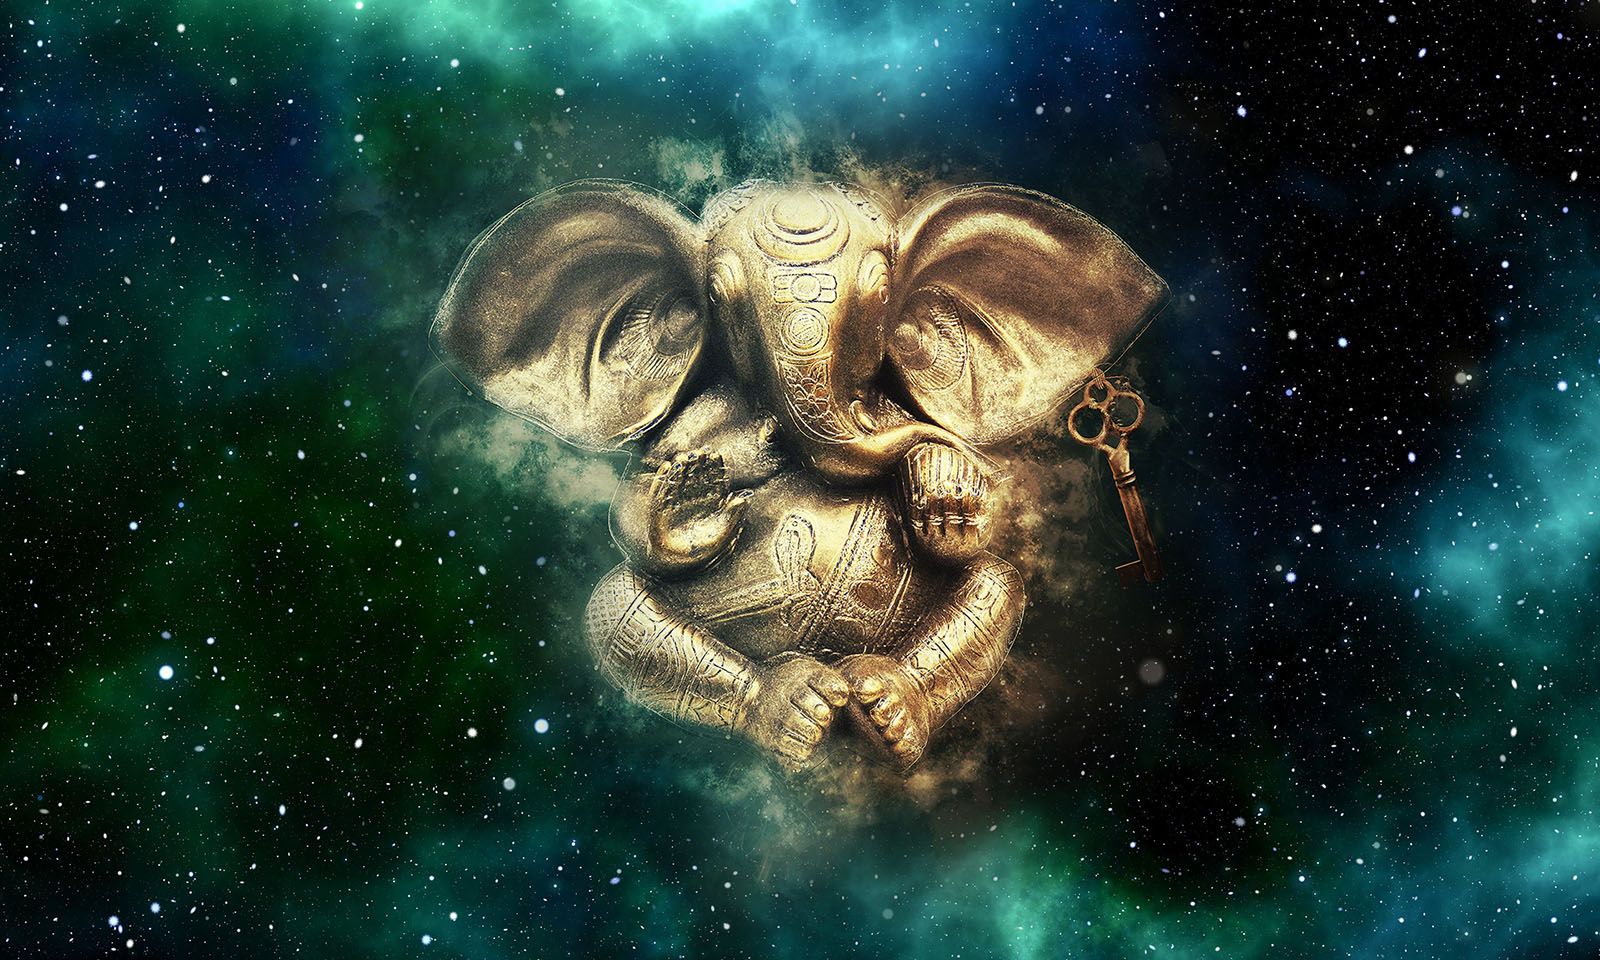 Ganesh mantra cosmos image